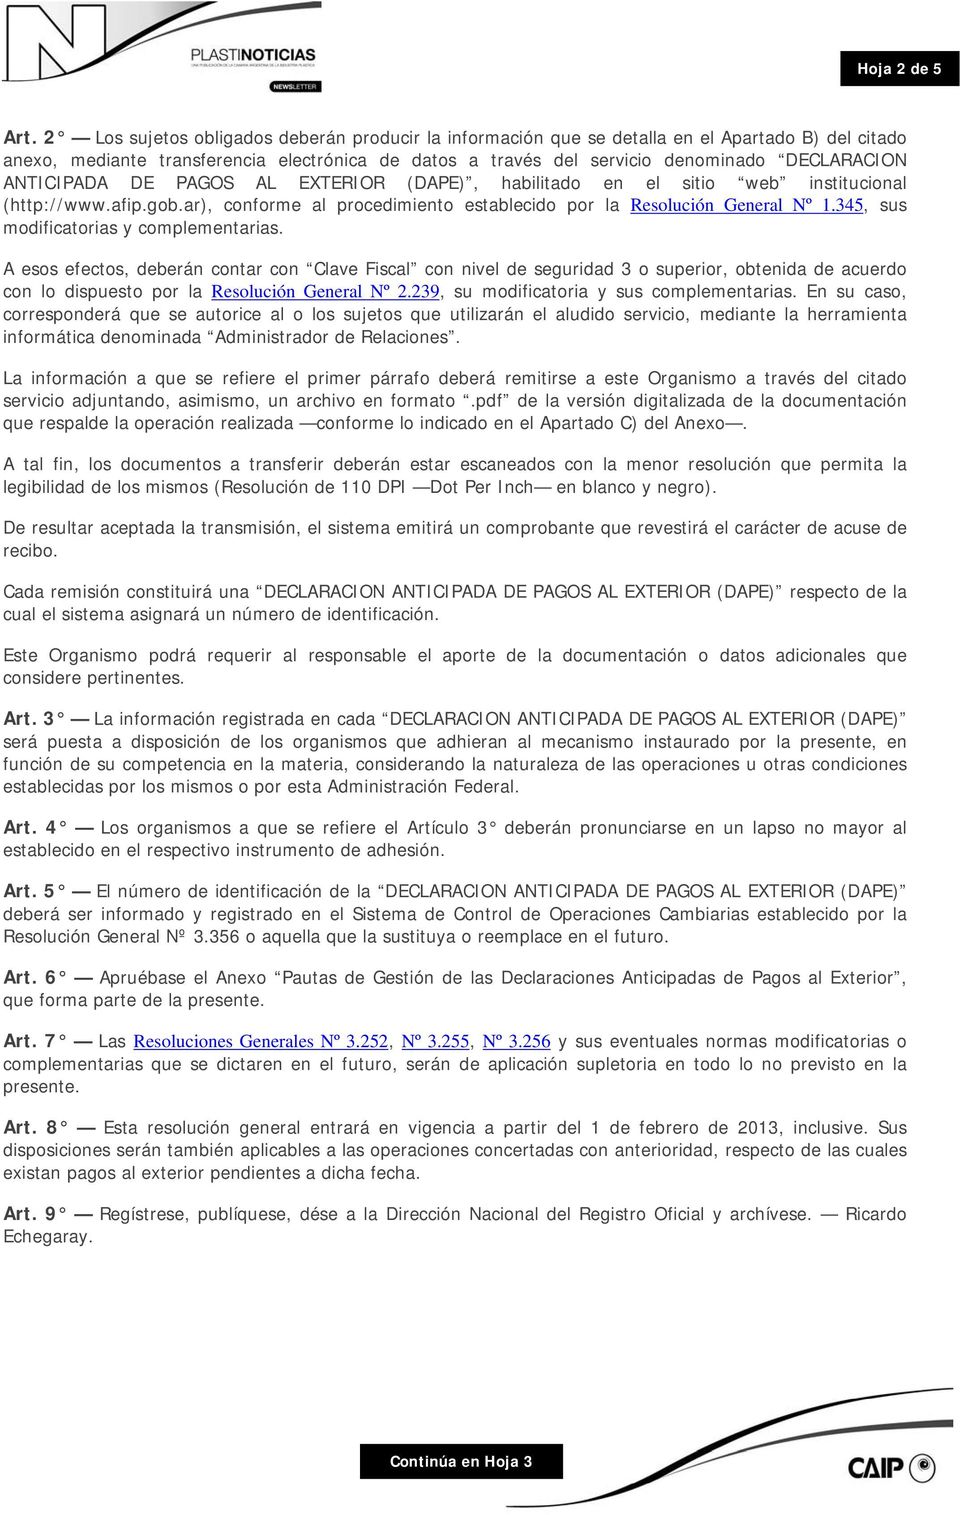 ANTICIPADA DE PAGOS AL EXTERIOR (DAPE), habilitado en el sitio web institucional (http://www.afip.gob.ar), conforme al procedimiento establecido por la Resolución General Nº 1.